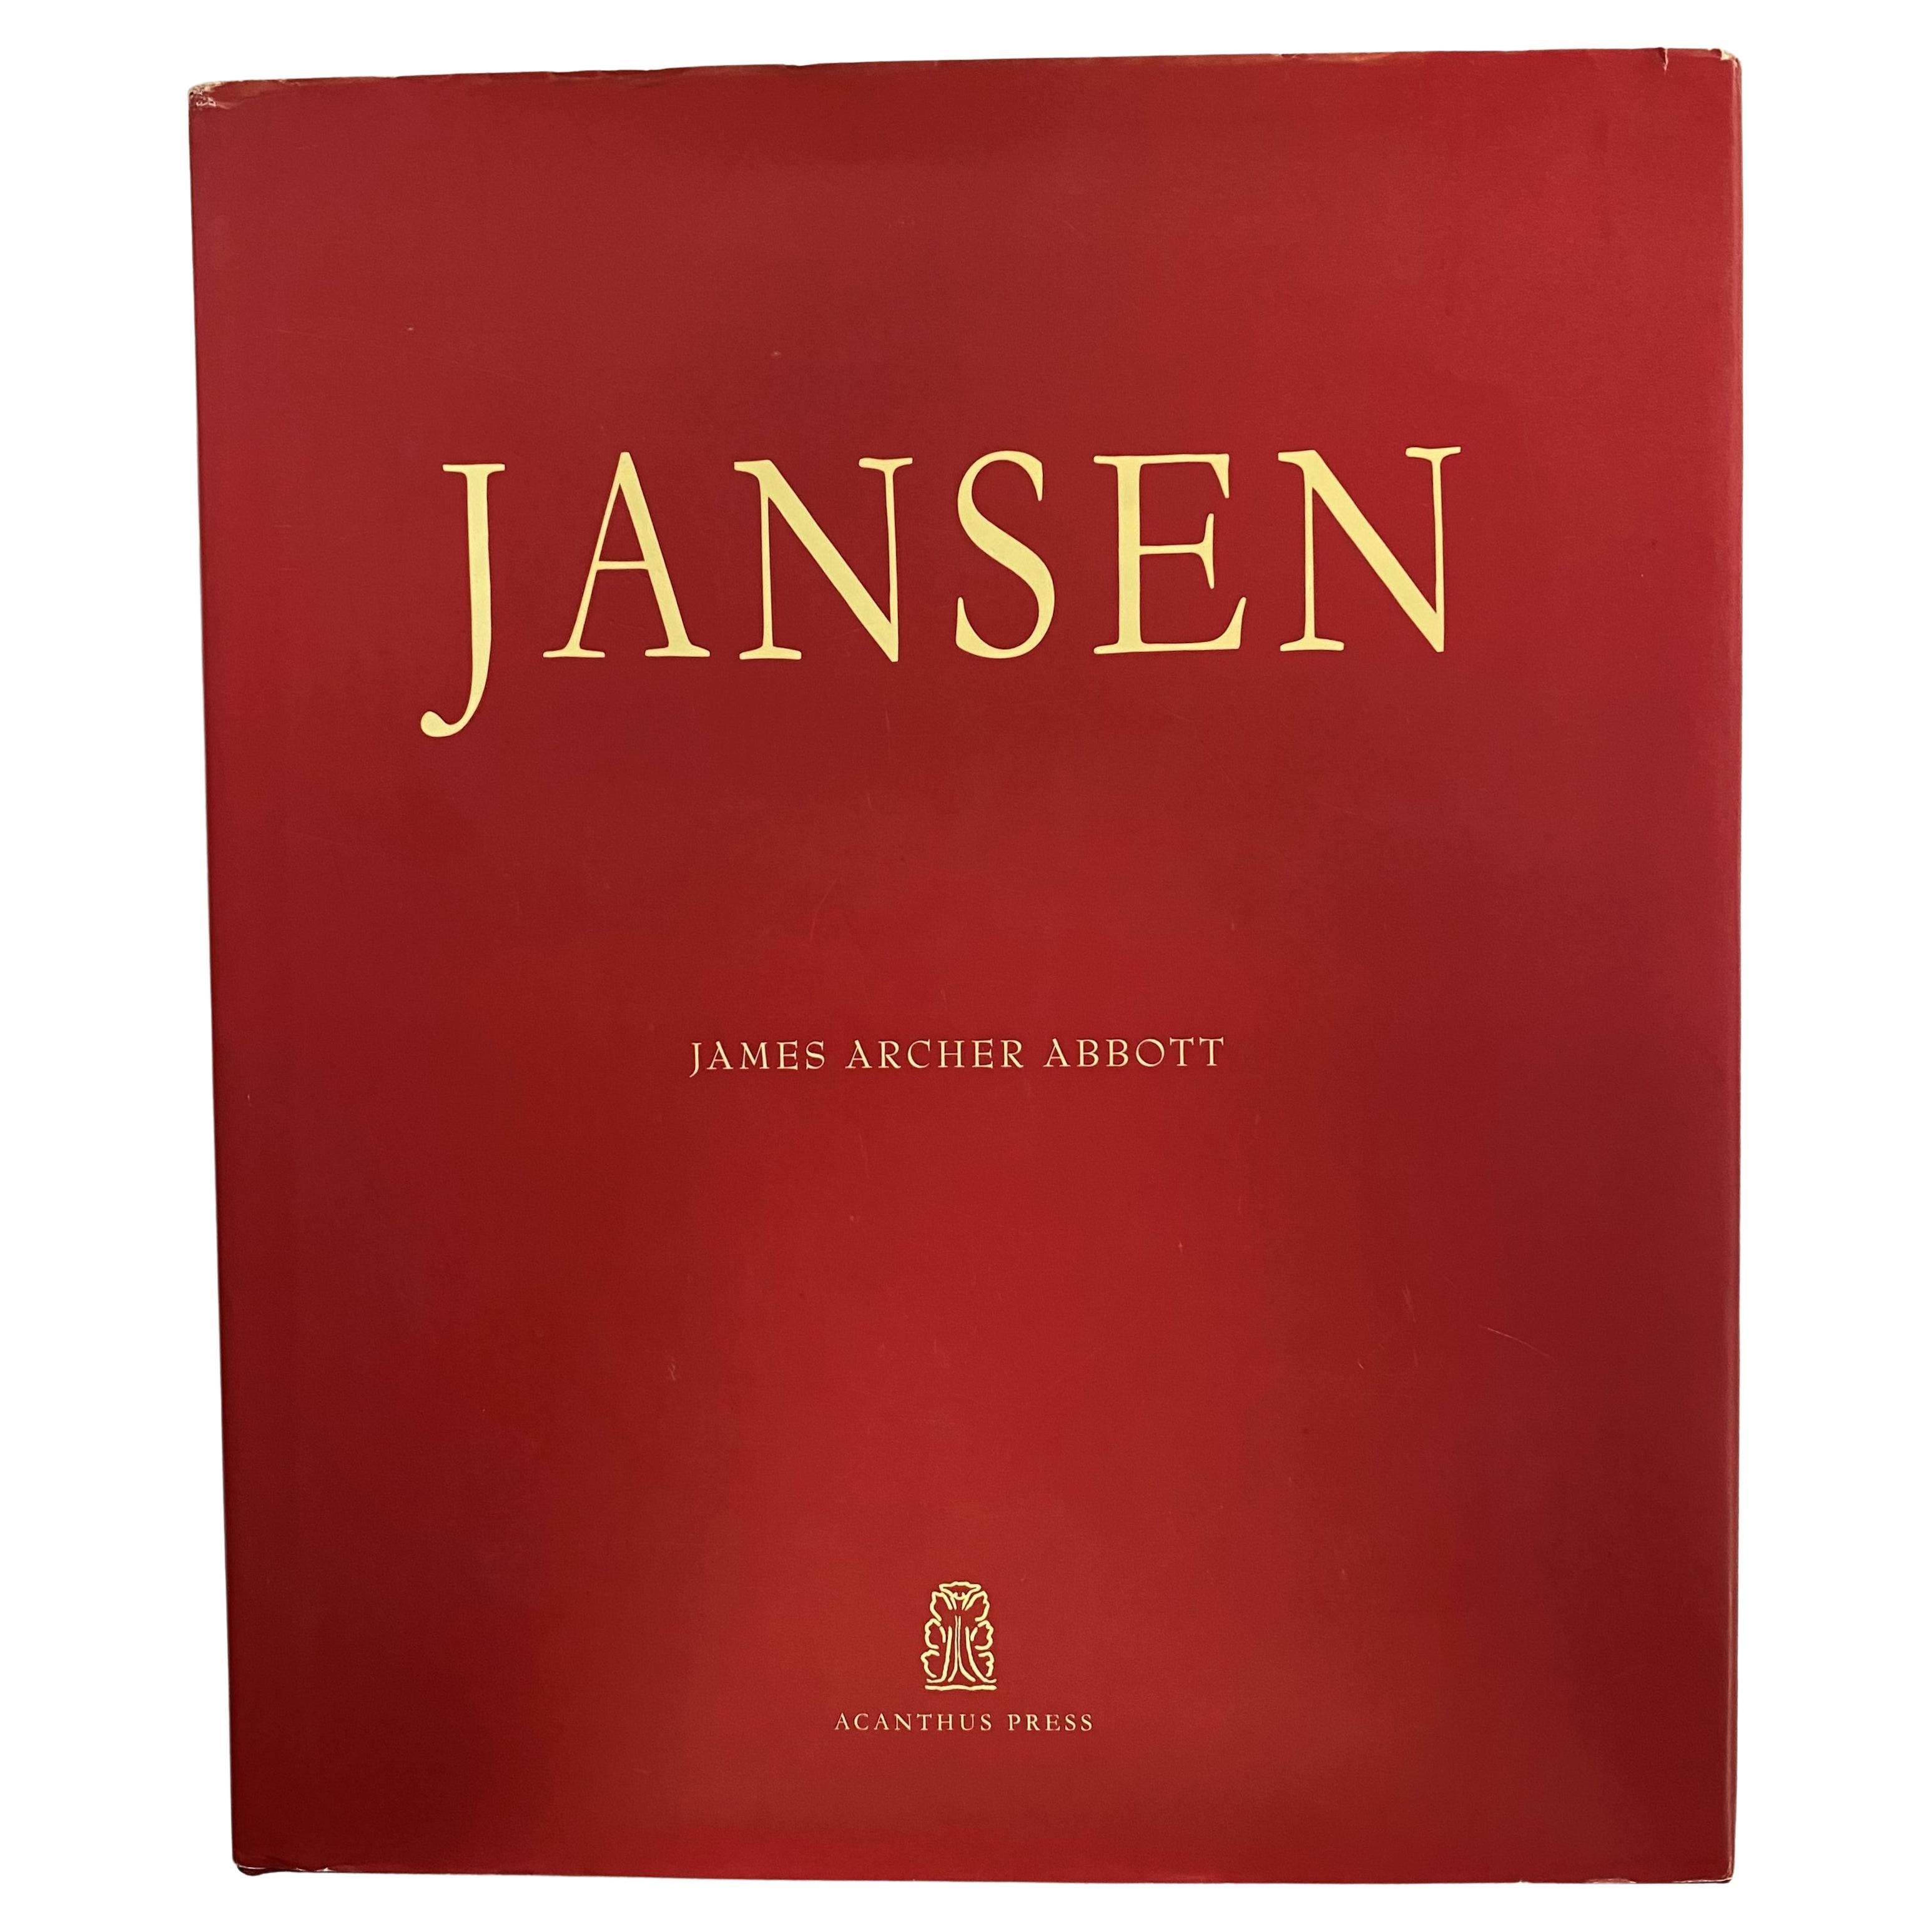 Jansen by James Archer Abbott (Book)